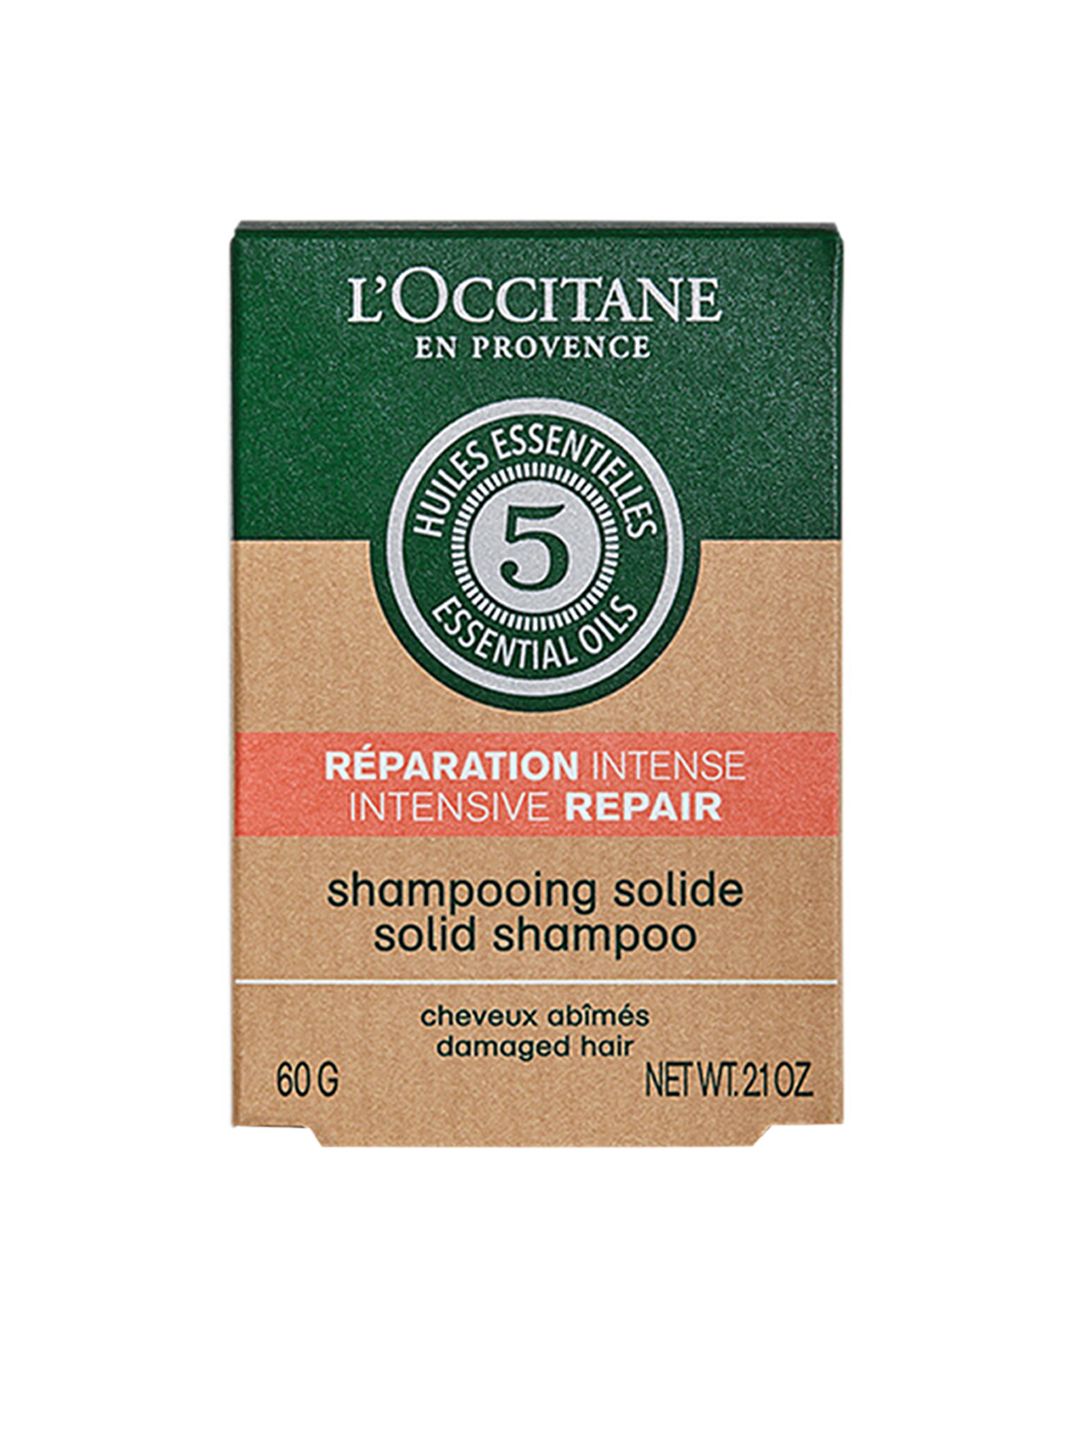 LOccitane en Provence Transparent Intensive Repair Solid Shampoo 60ml Price in India